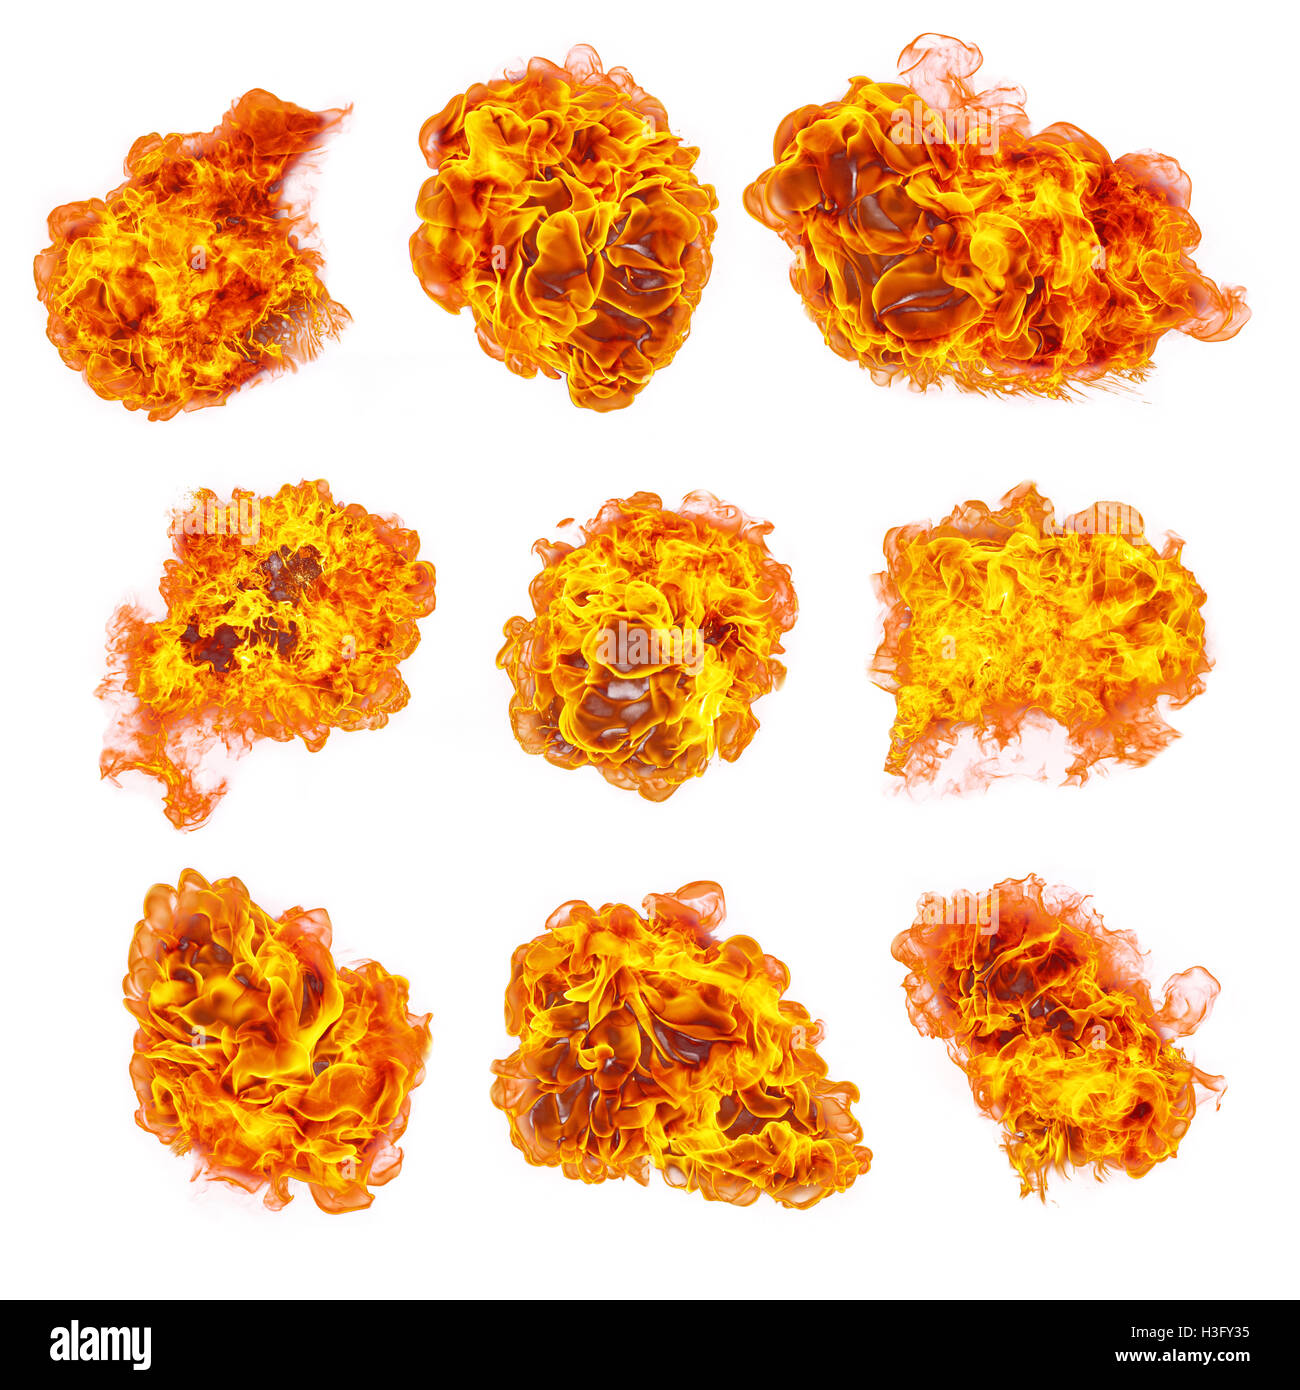 Reihe von verschiedenen Arten von Flammen, isoliert auf weißem Hintergrund. hohe Auflösung Stockfoto